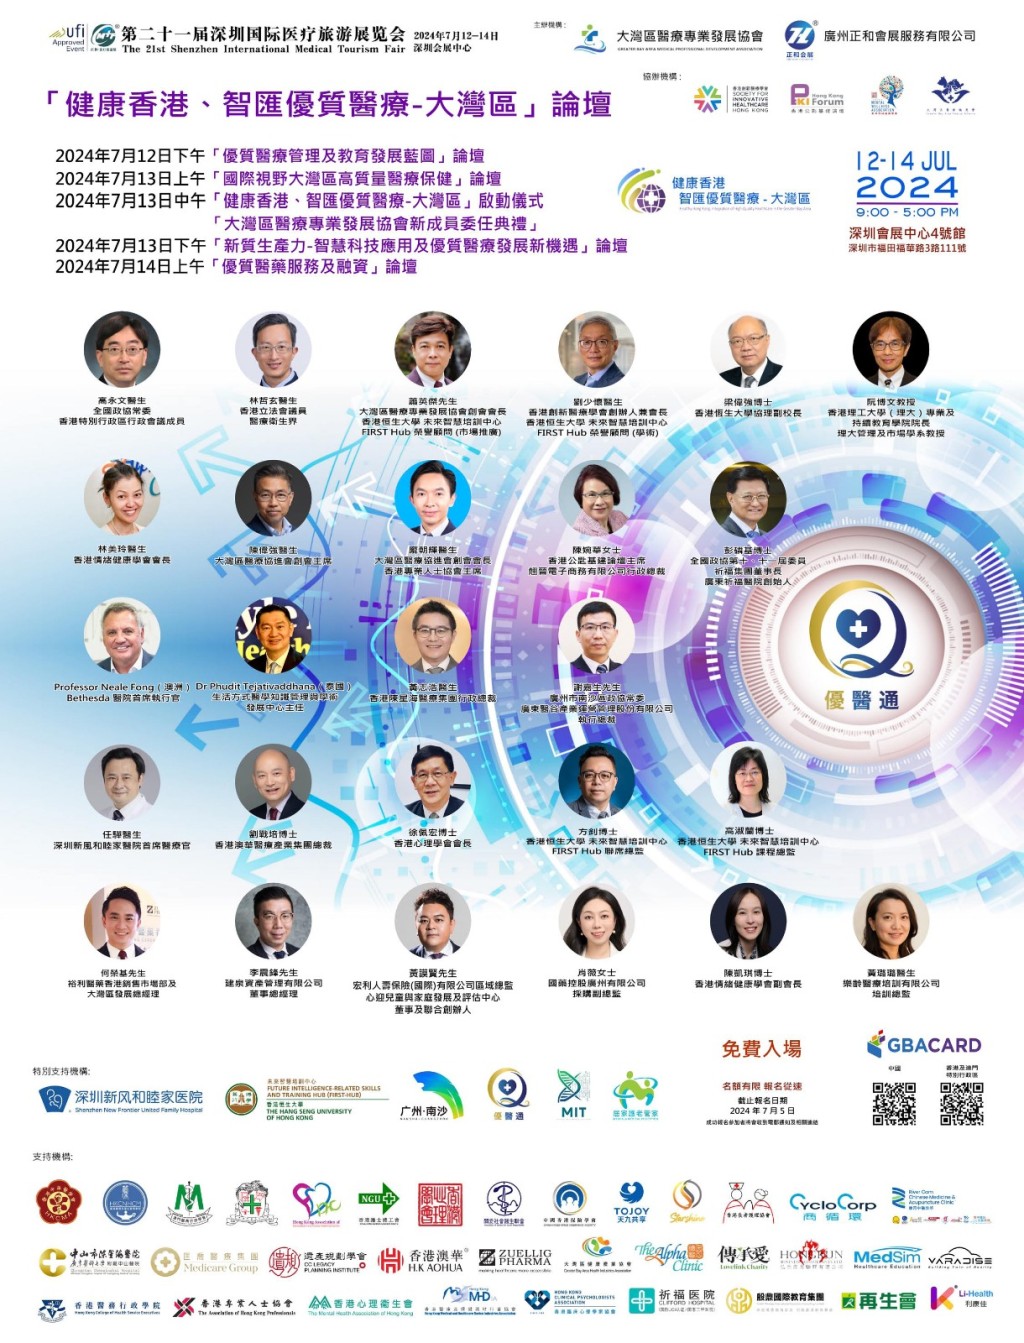 現正於深圳會展中心舉行的「健康香港、智匯優質醫療-大灣區」論壇，舉行日期由7月12日至7月14日。